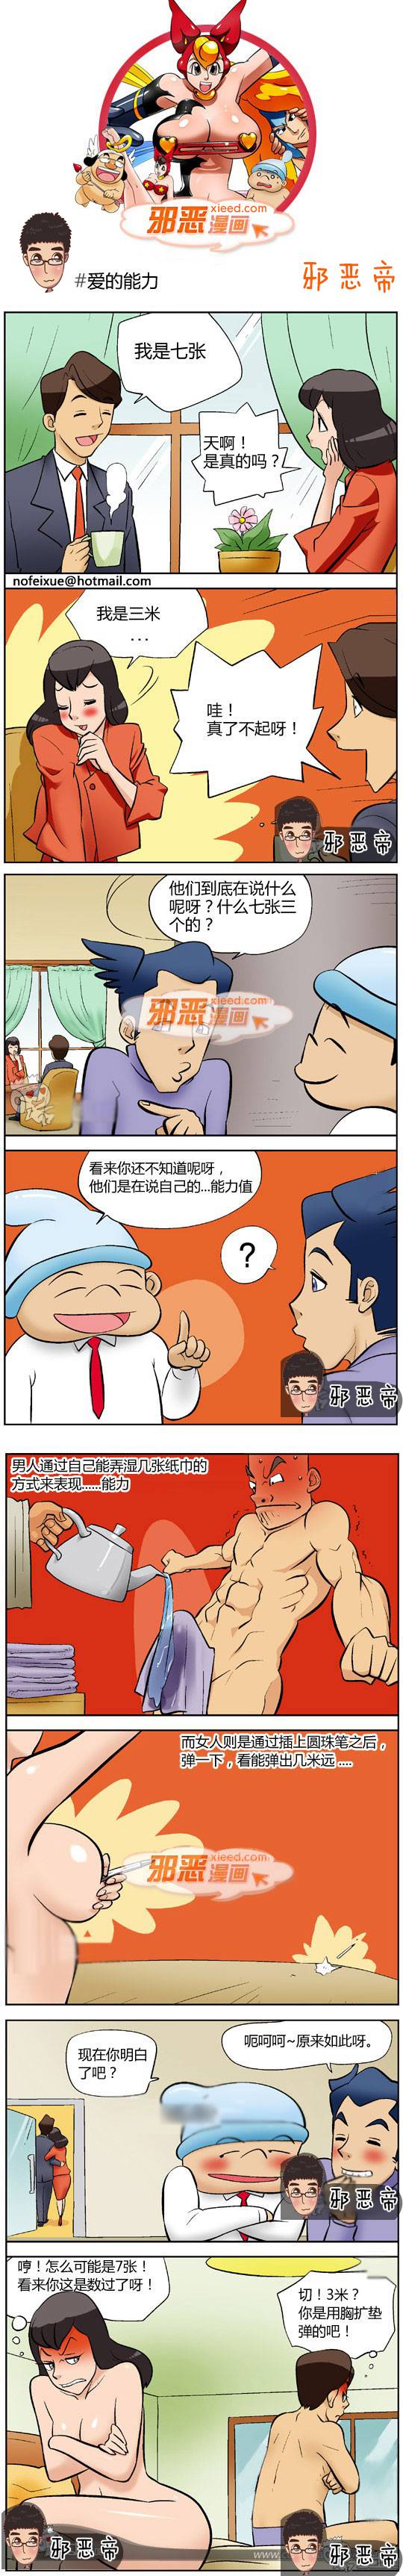 邪恶漫画爆笑囧图第347刊：比基尼